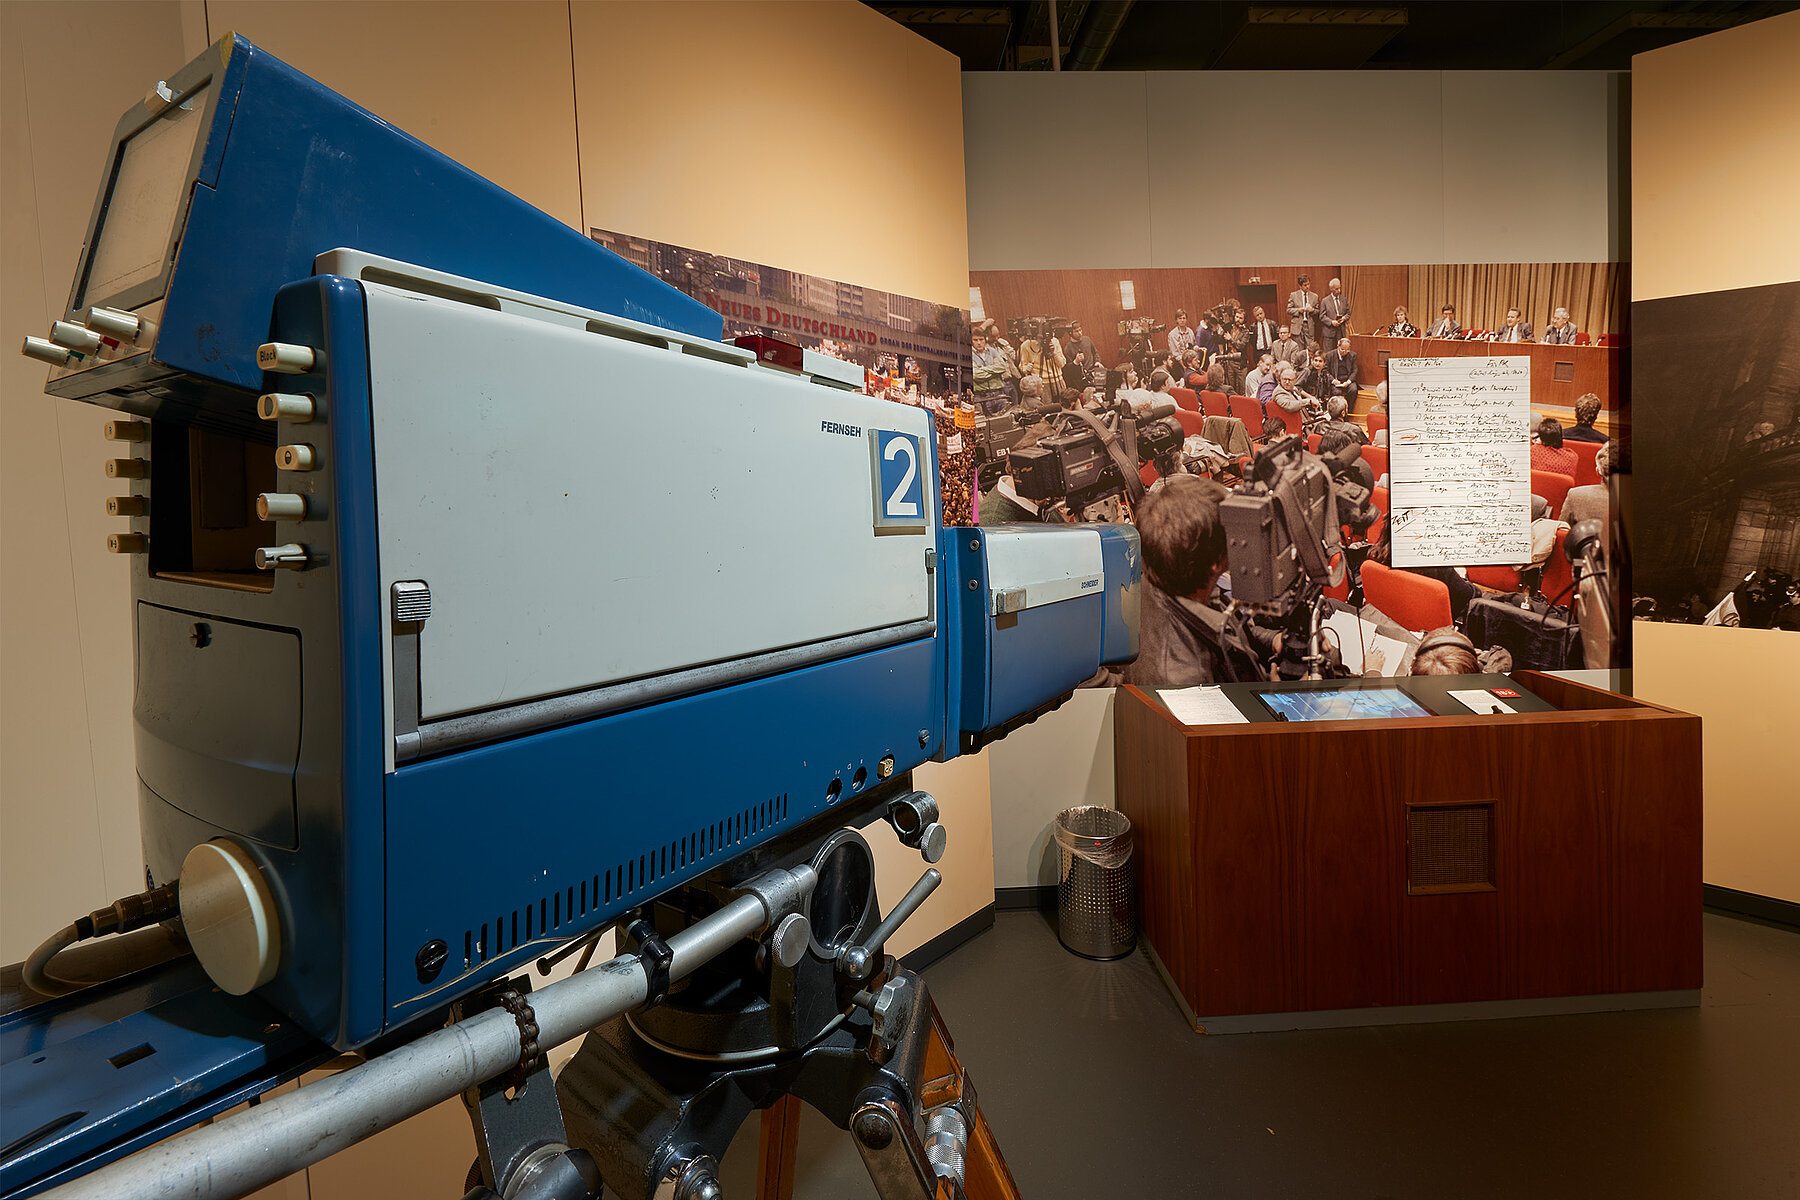 Eine Fernsehkamera links im Bild ist auf das Pult der Schabowski-Pressekonferenz gerichtet. Dahinter ein großformatiges Bild der Konferenz und ein vergrößerter Druck von Schabowskis Notizzettels von der Pressekonferenz an der Wand. 